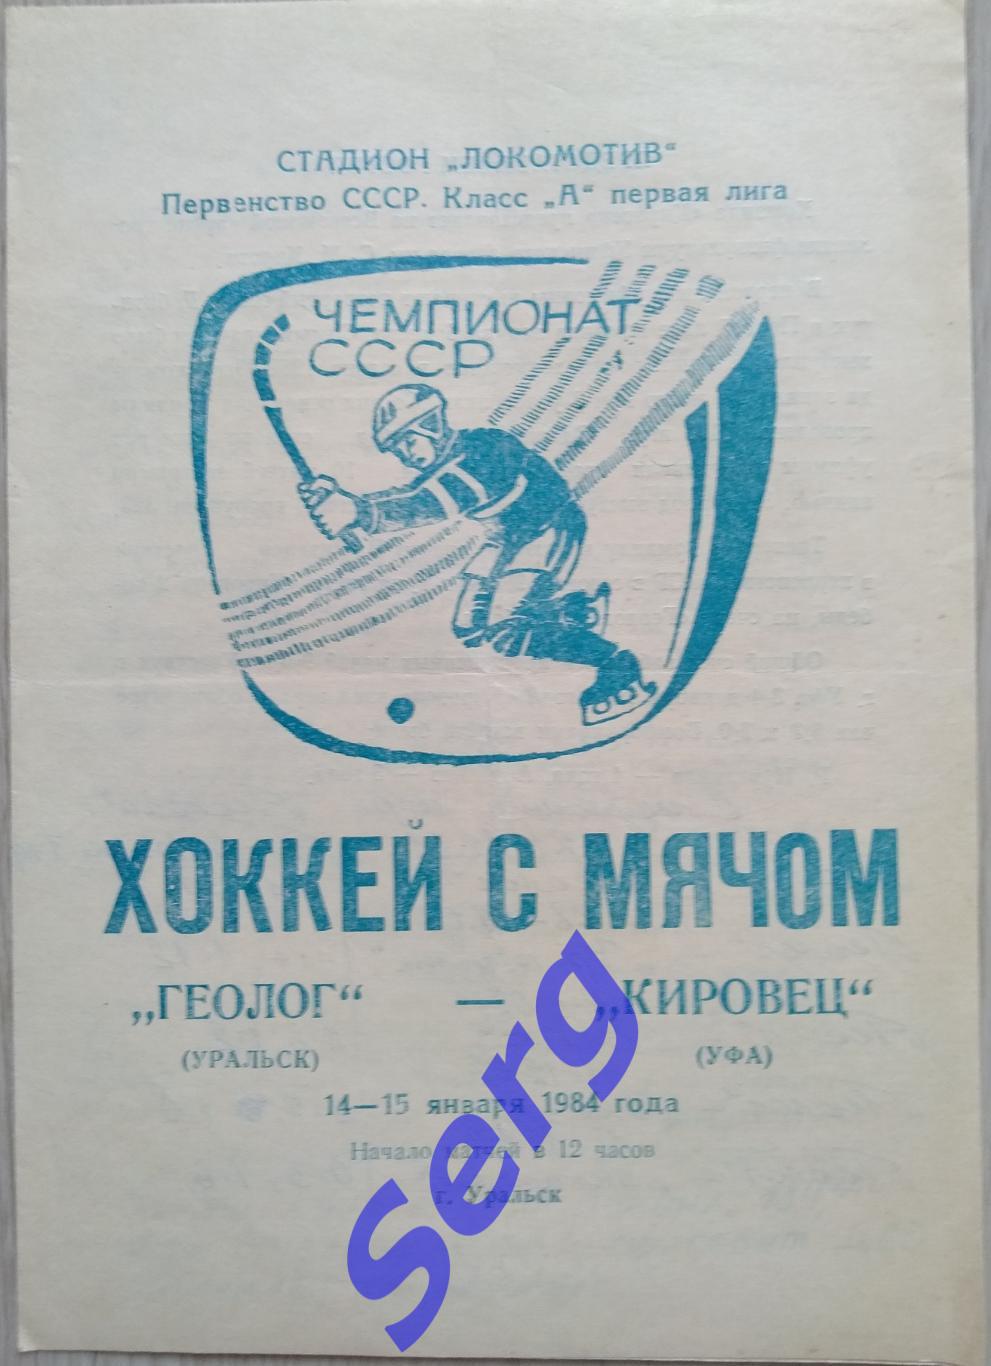 Геолог Уральск - Кировец Уфа - 14-15 января 1984 год